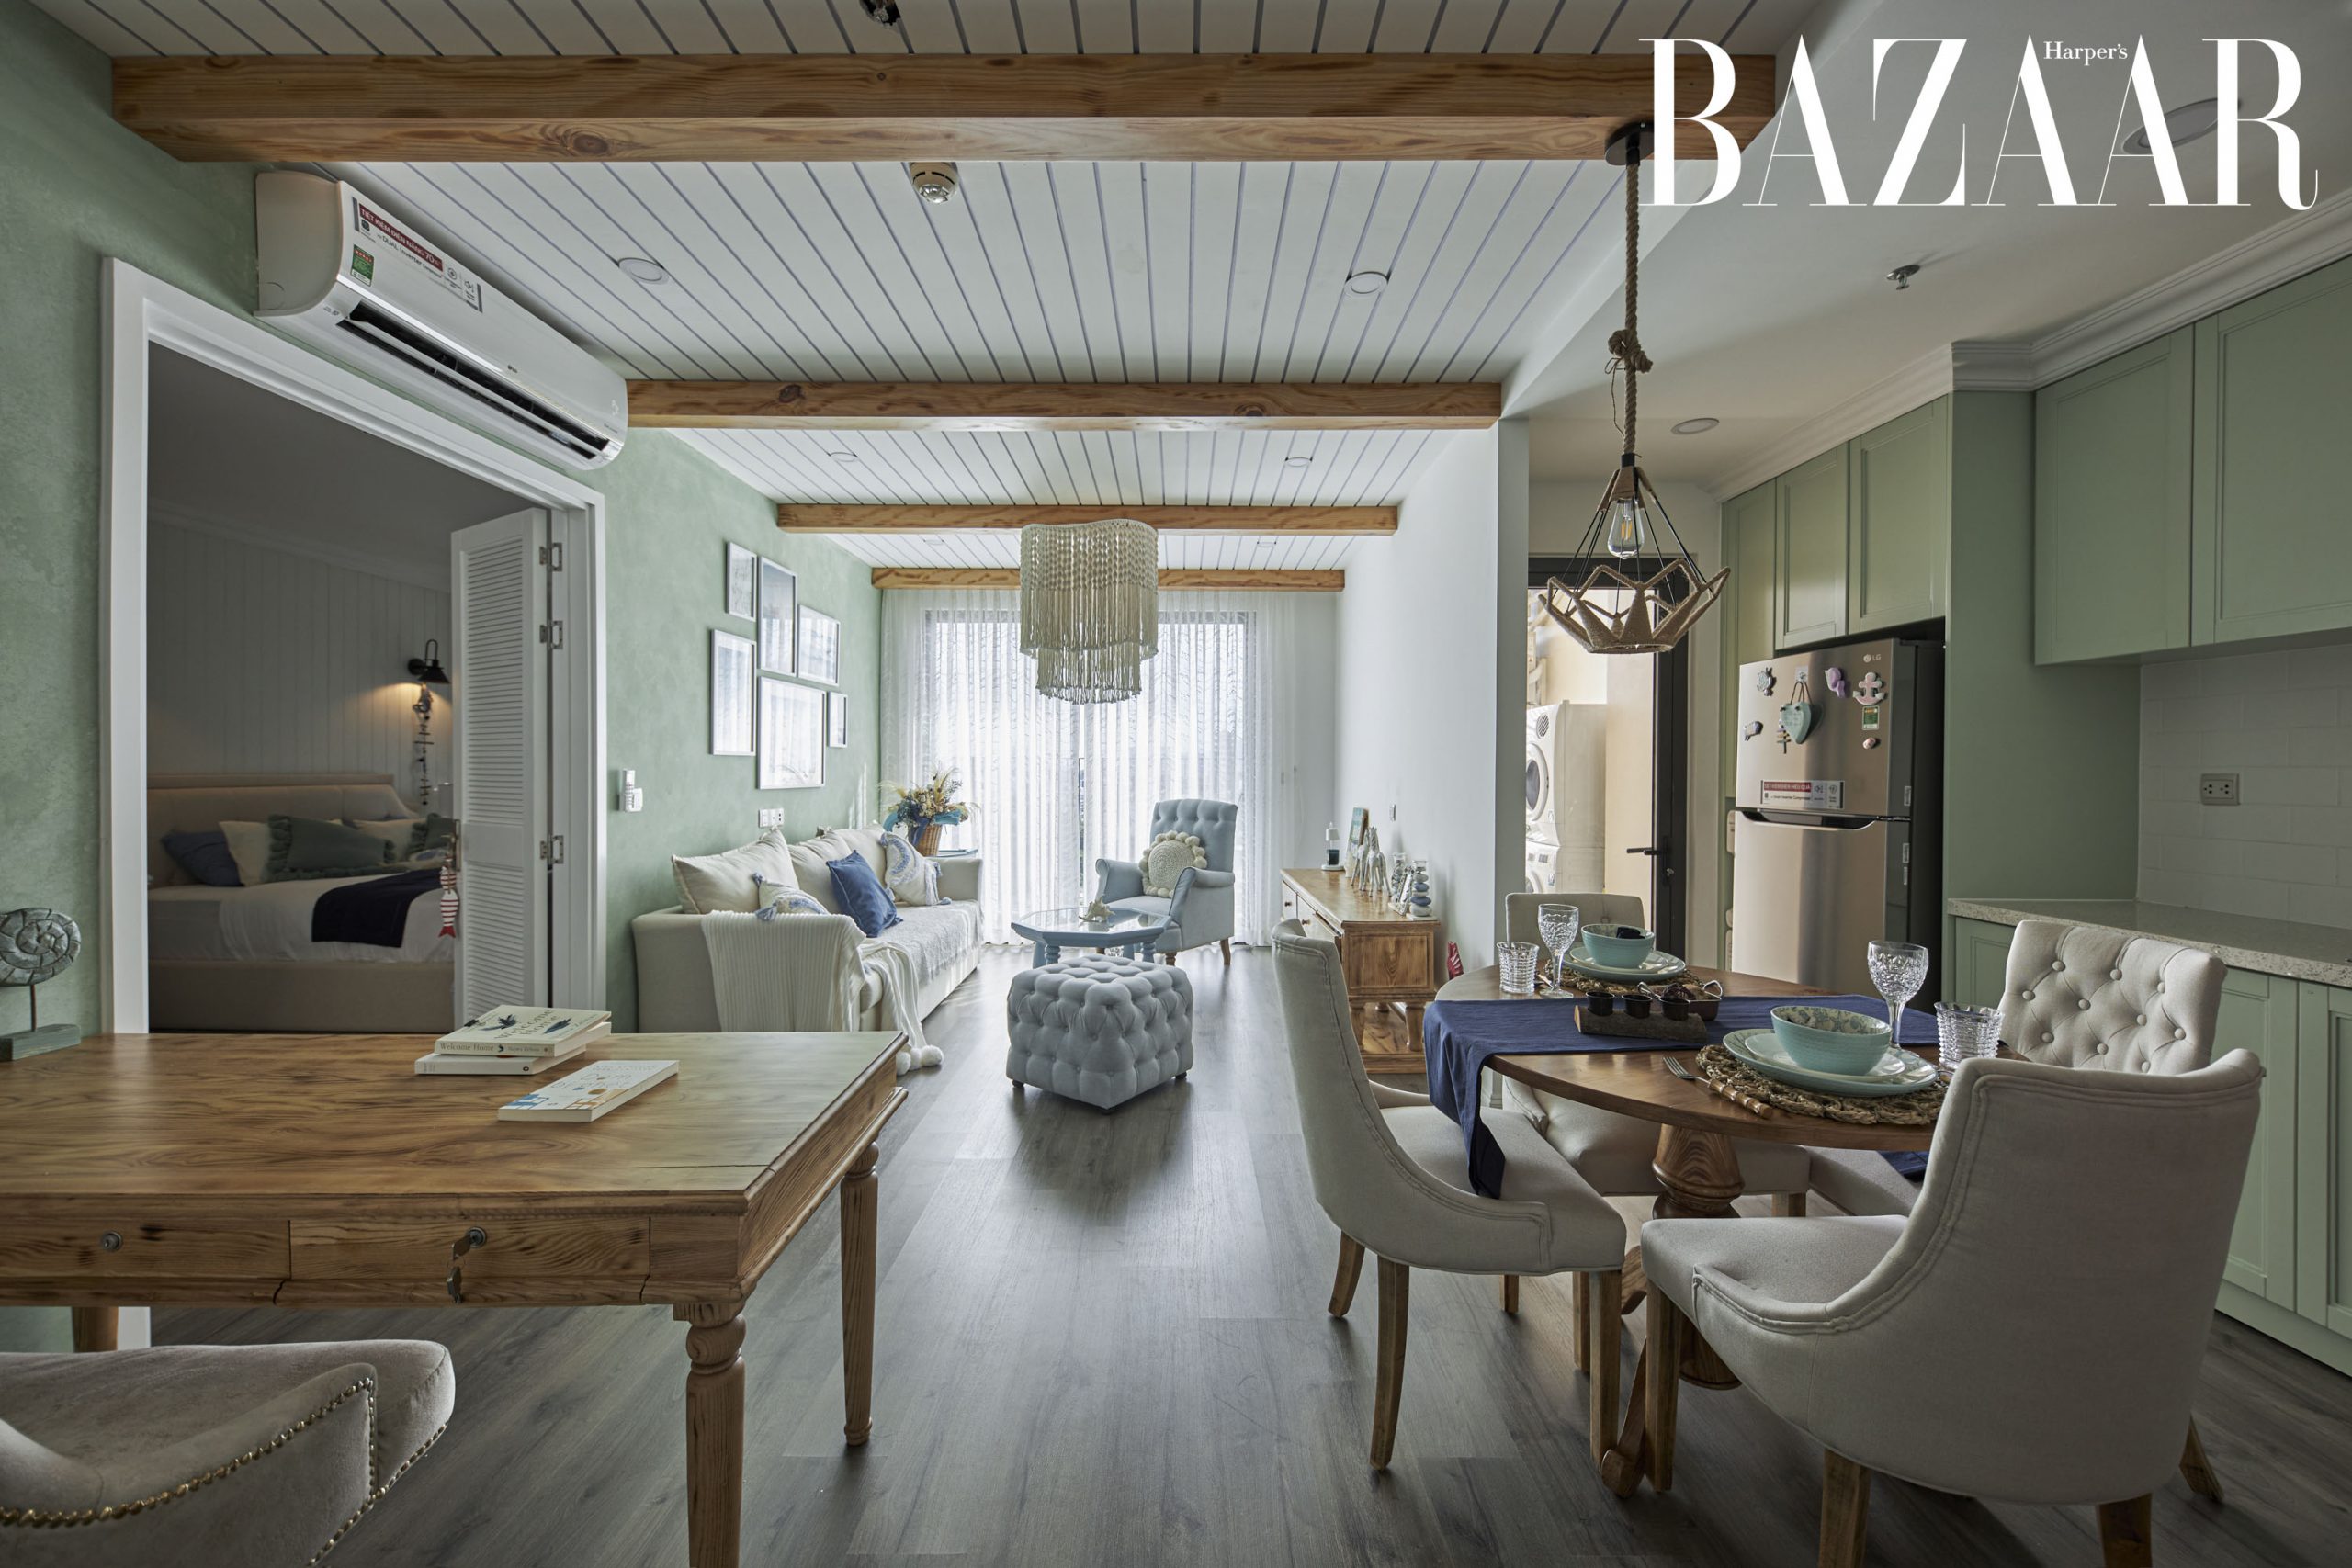 Harpers Bazaar nha dang kim phuong 03 copy scaled - Ngôi nhà màu xanh phong cách Coastal Farmhouse của Đặng Kim Phượng